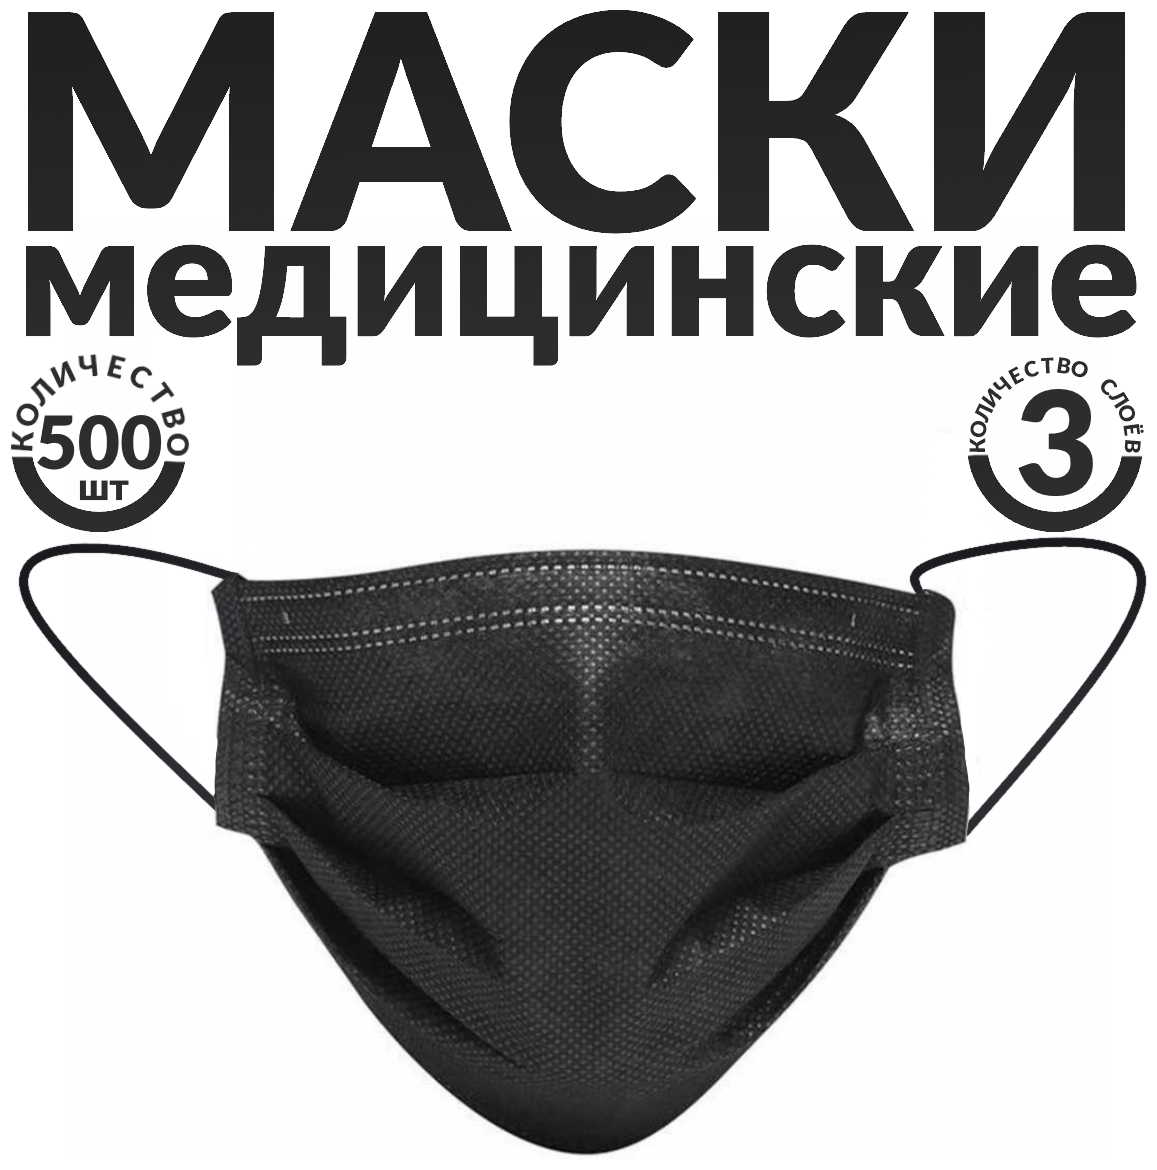 Одноразовые маски трёхслойные, 500 шт., черные (гигиенические маски медицинские из нетканного материала)